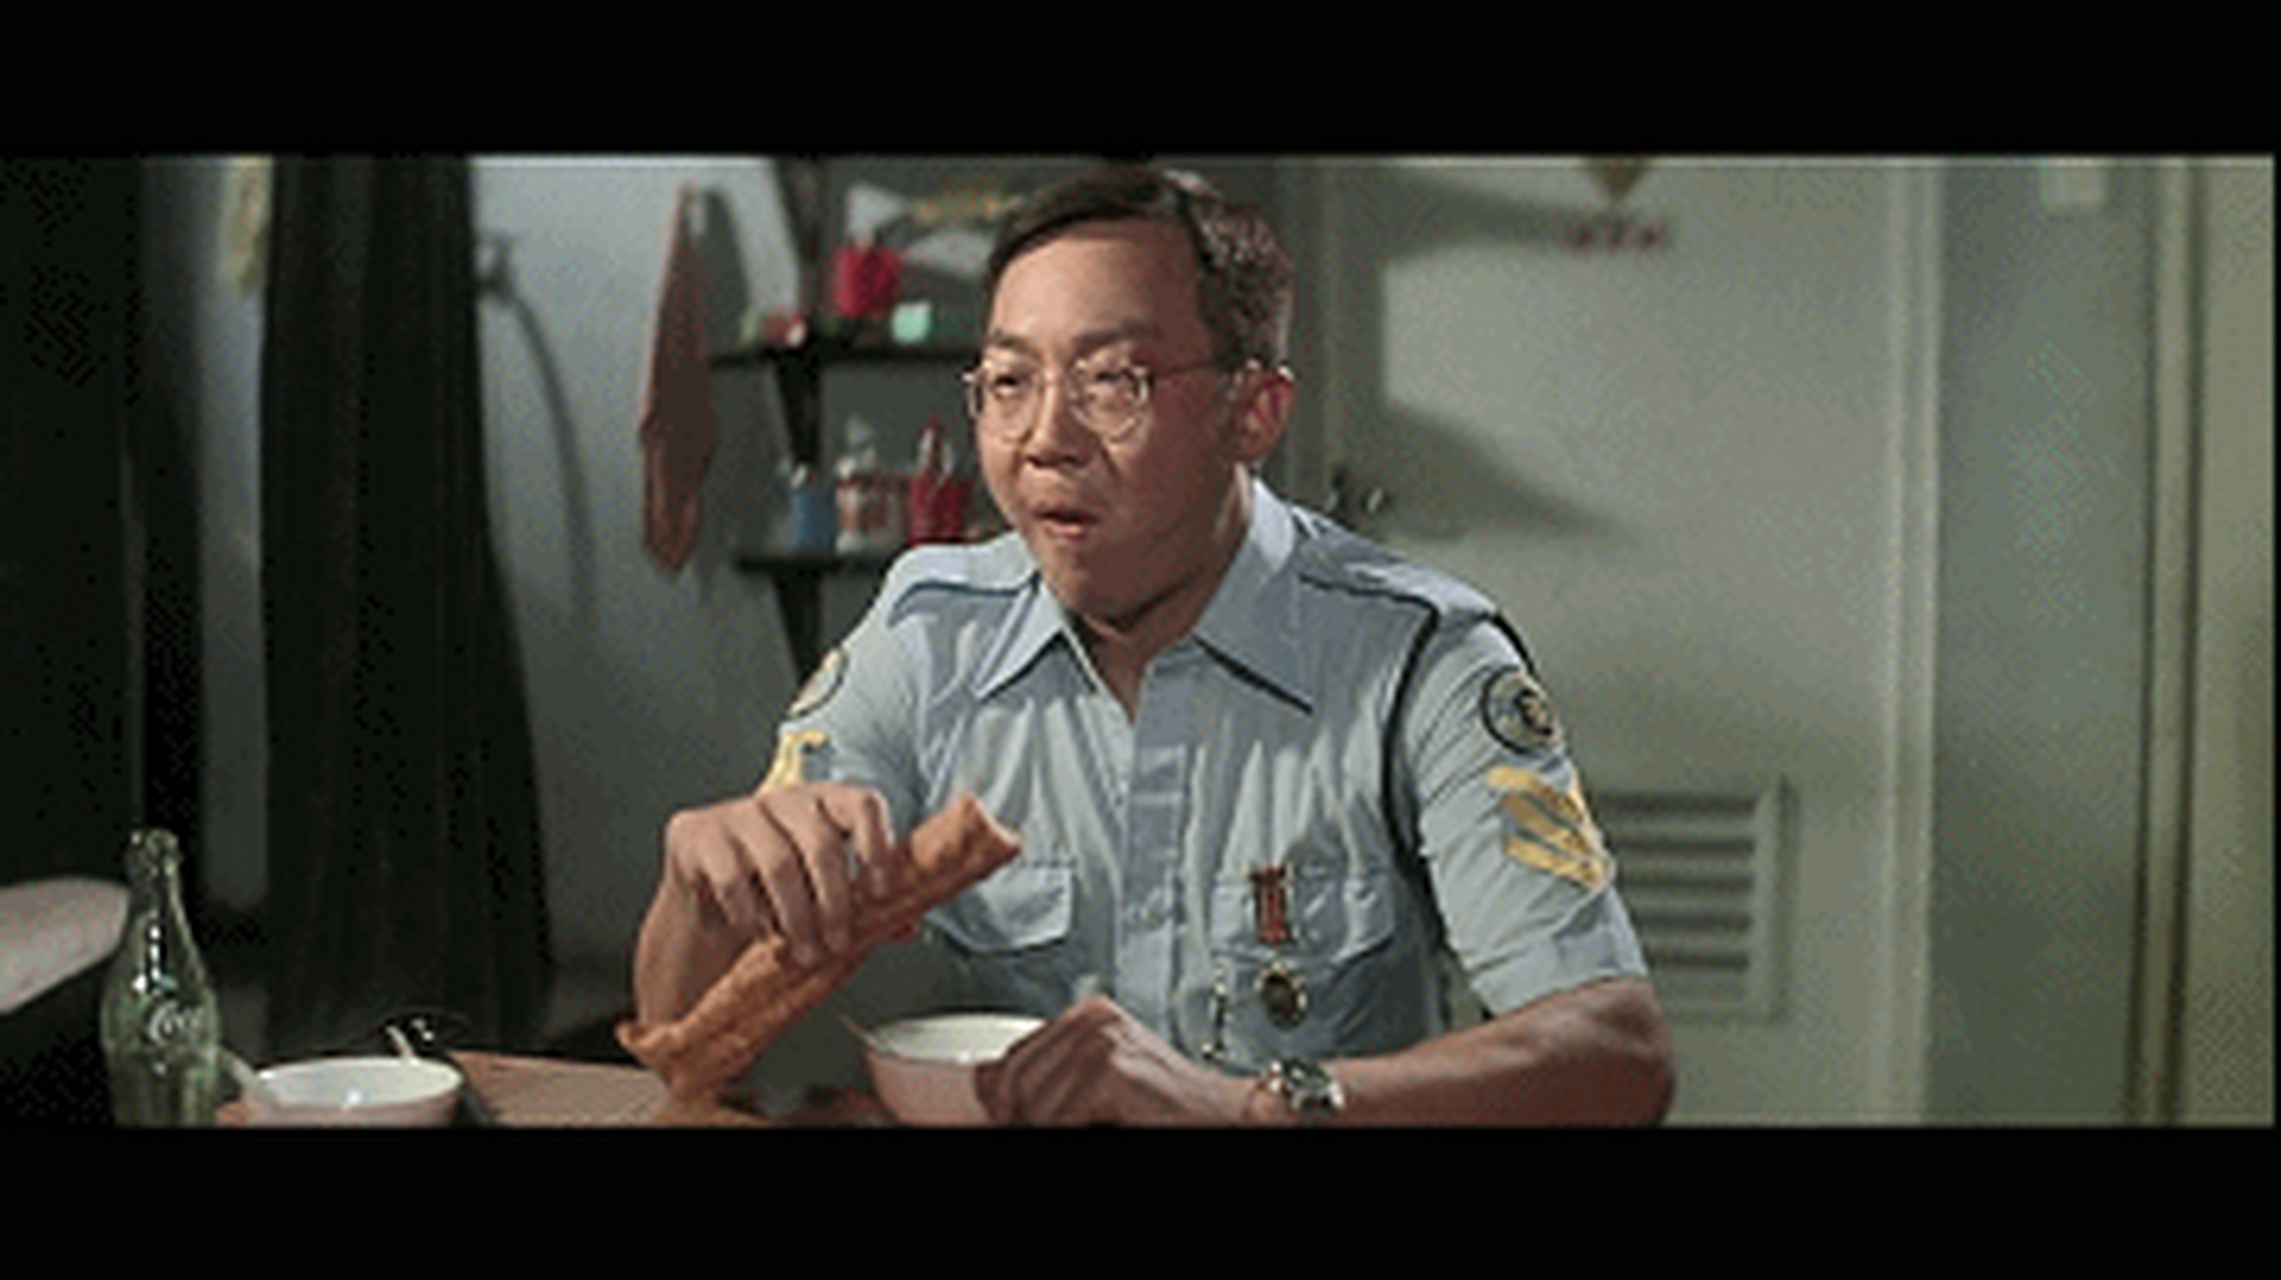 1981年香港华语片票房第一名《摩登保镖》,1776万港币 导演: 许冠文